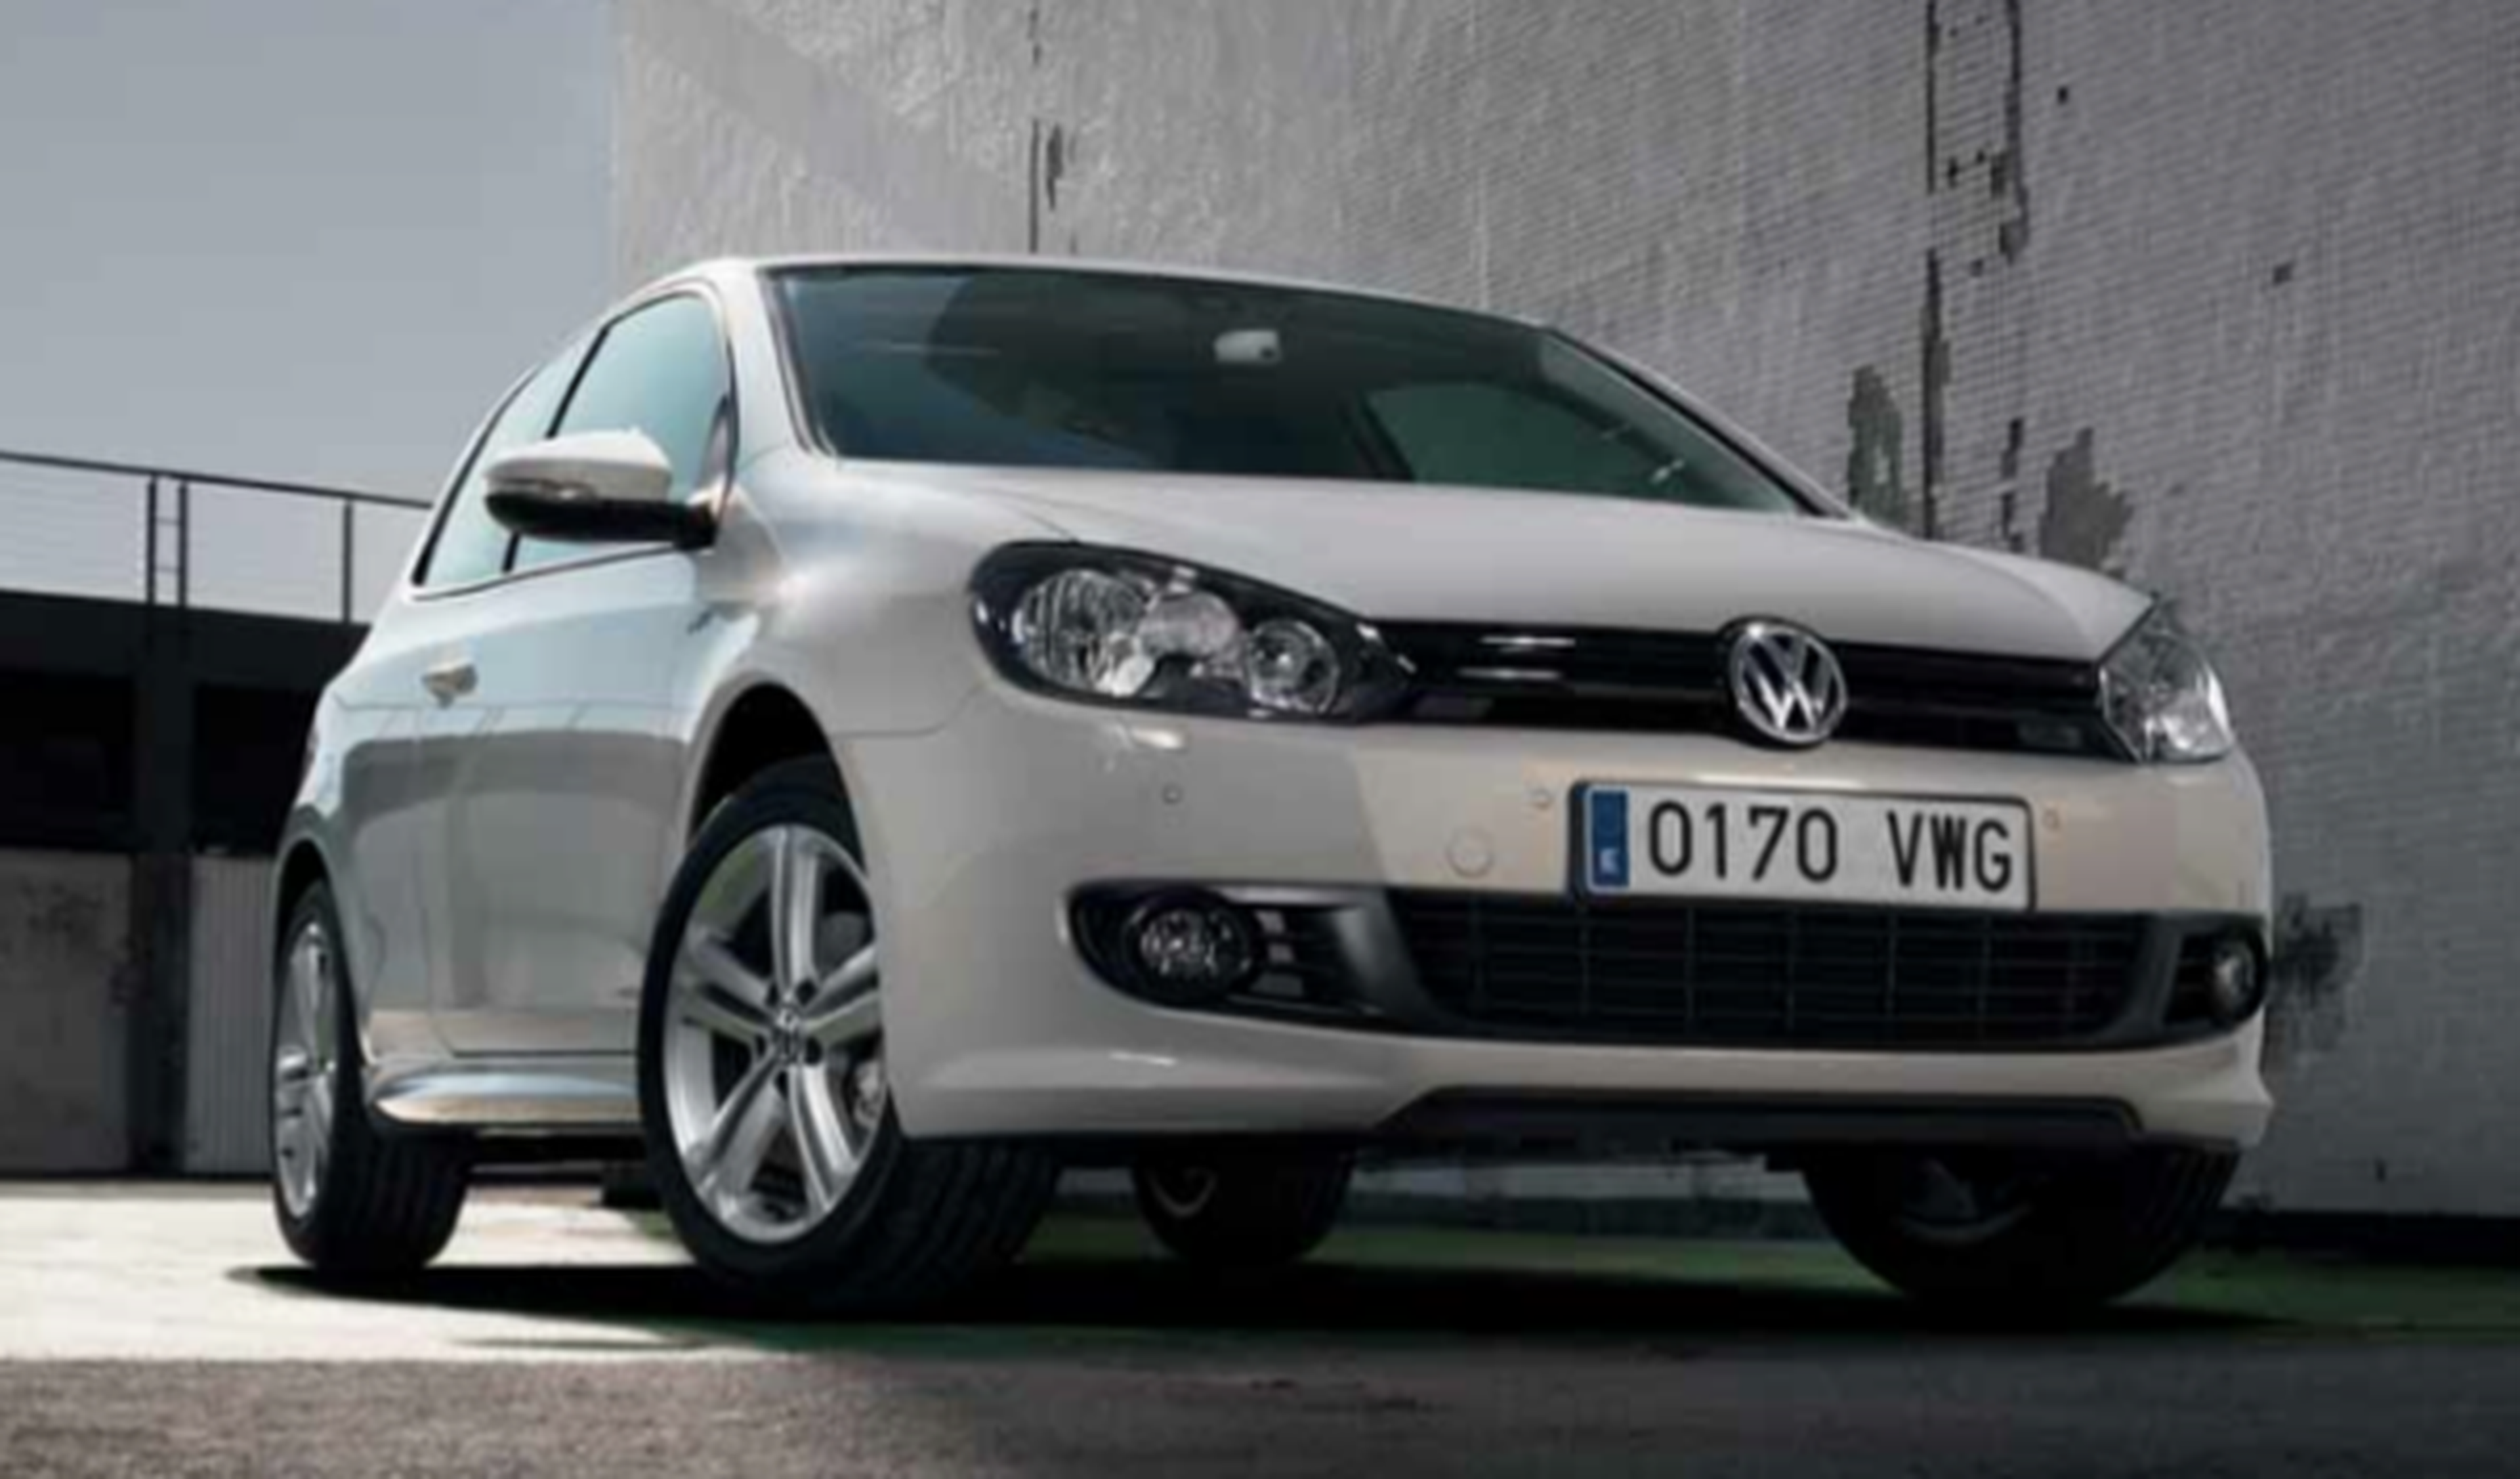 300.000 coches diésel del Grupo Volkswagen a revisión